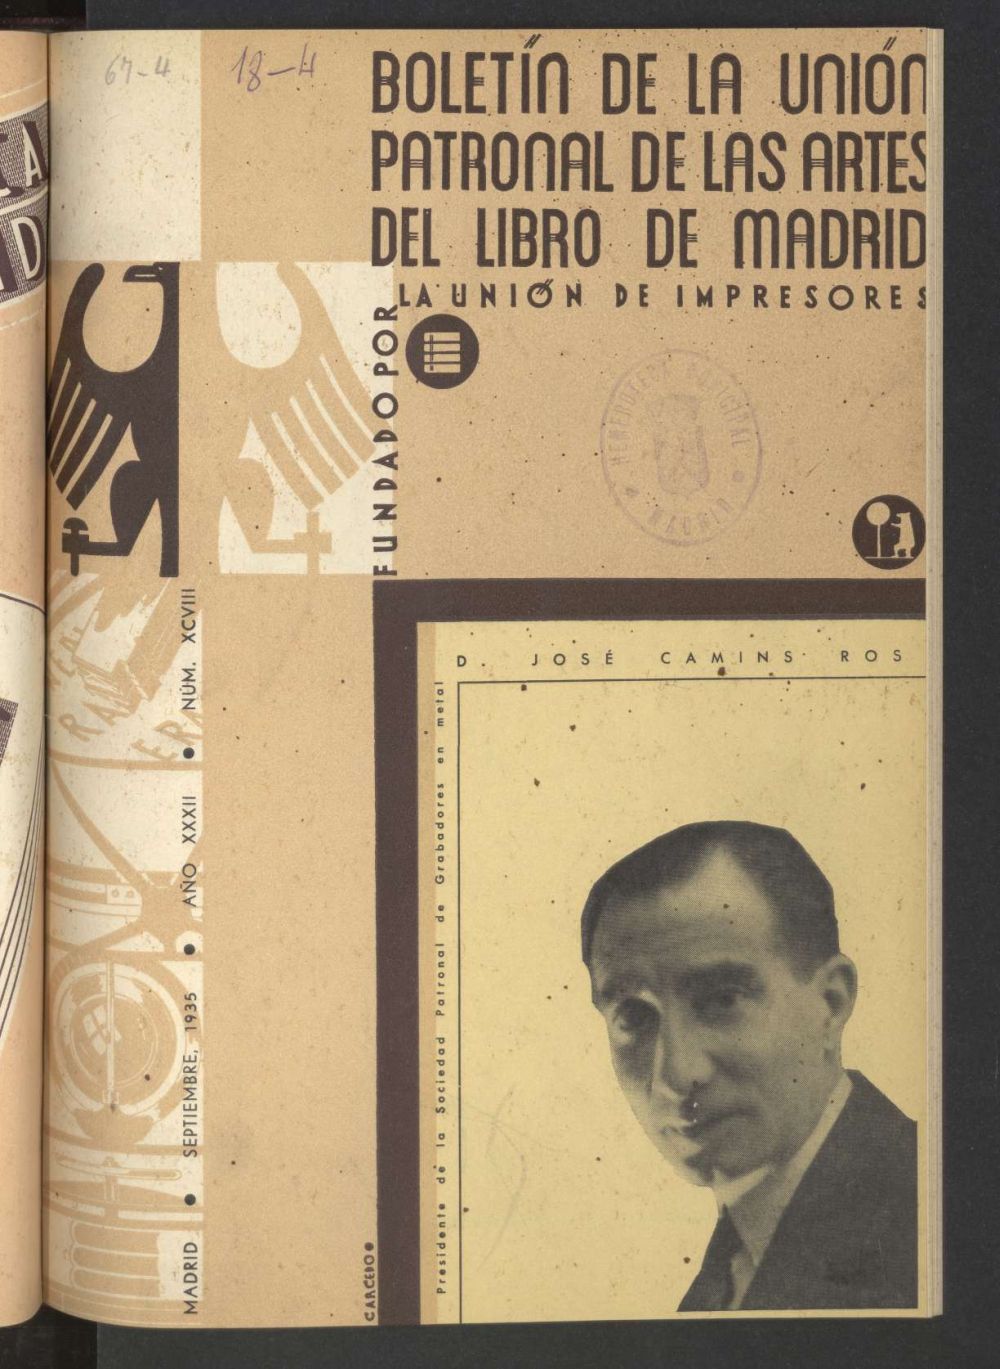 Boletn de la unin patronal de las artes del libro de Madrid de septiembre de 1935